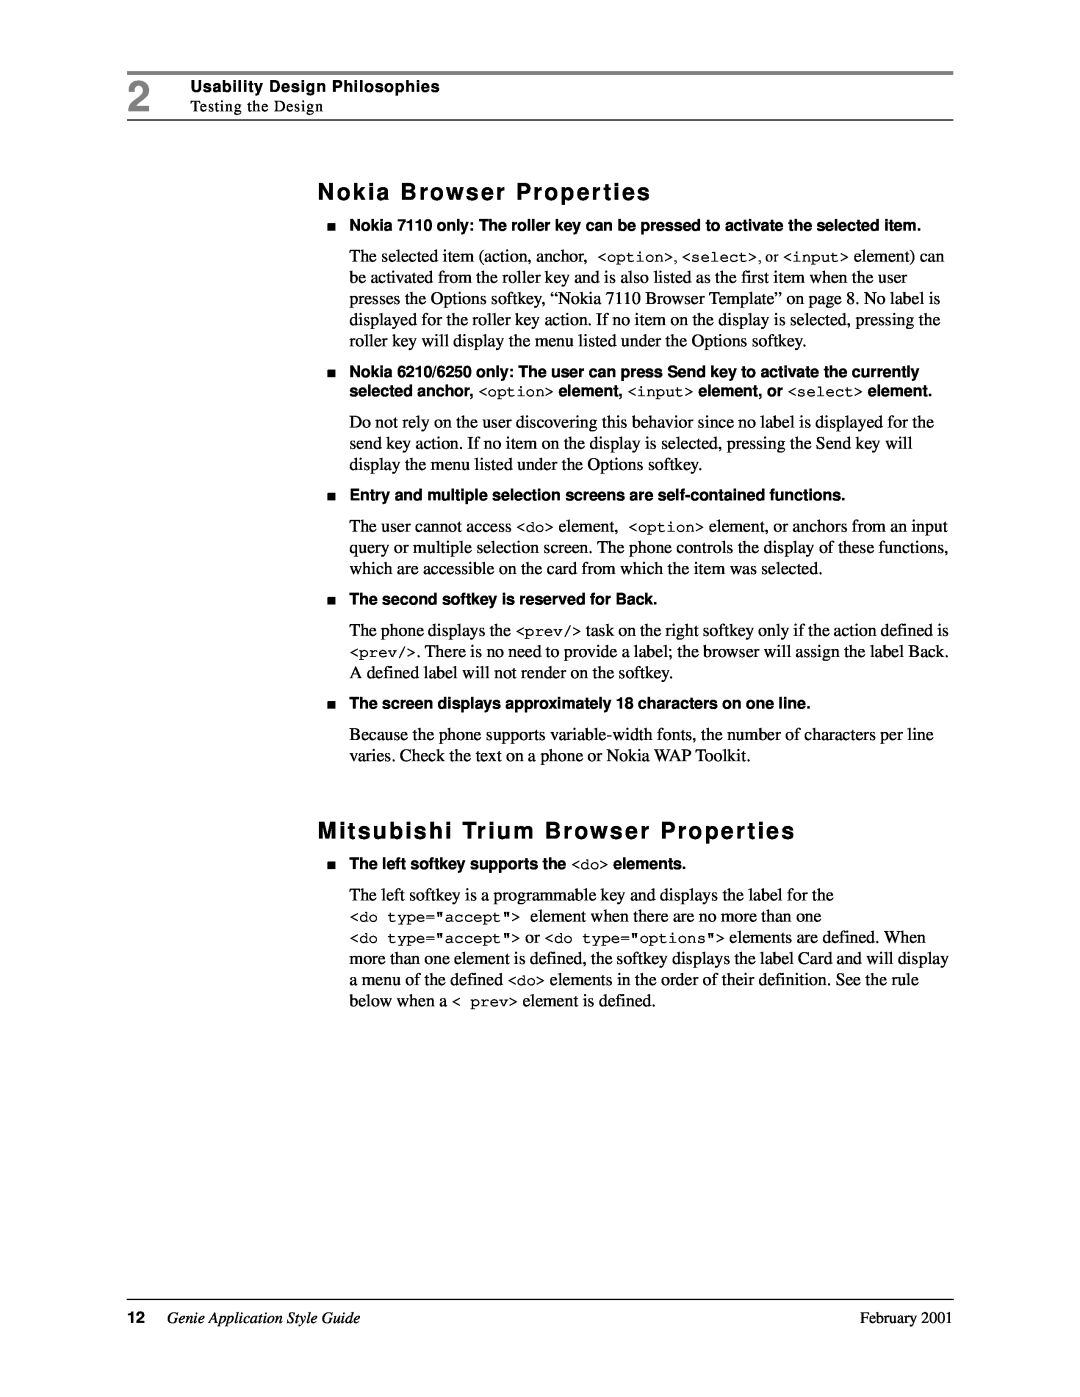 Genie 7110 manual Nokia Browser Proper ties, Mitsubishi Trium Browser Proper ties, Genie Application Style Guide 